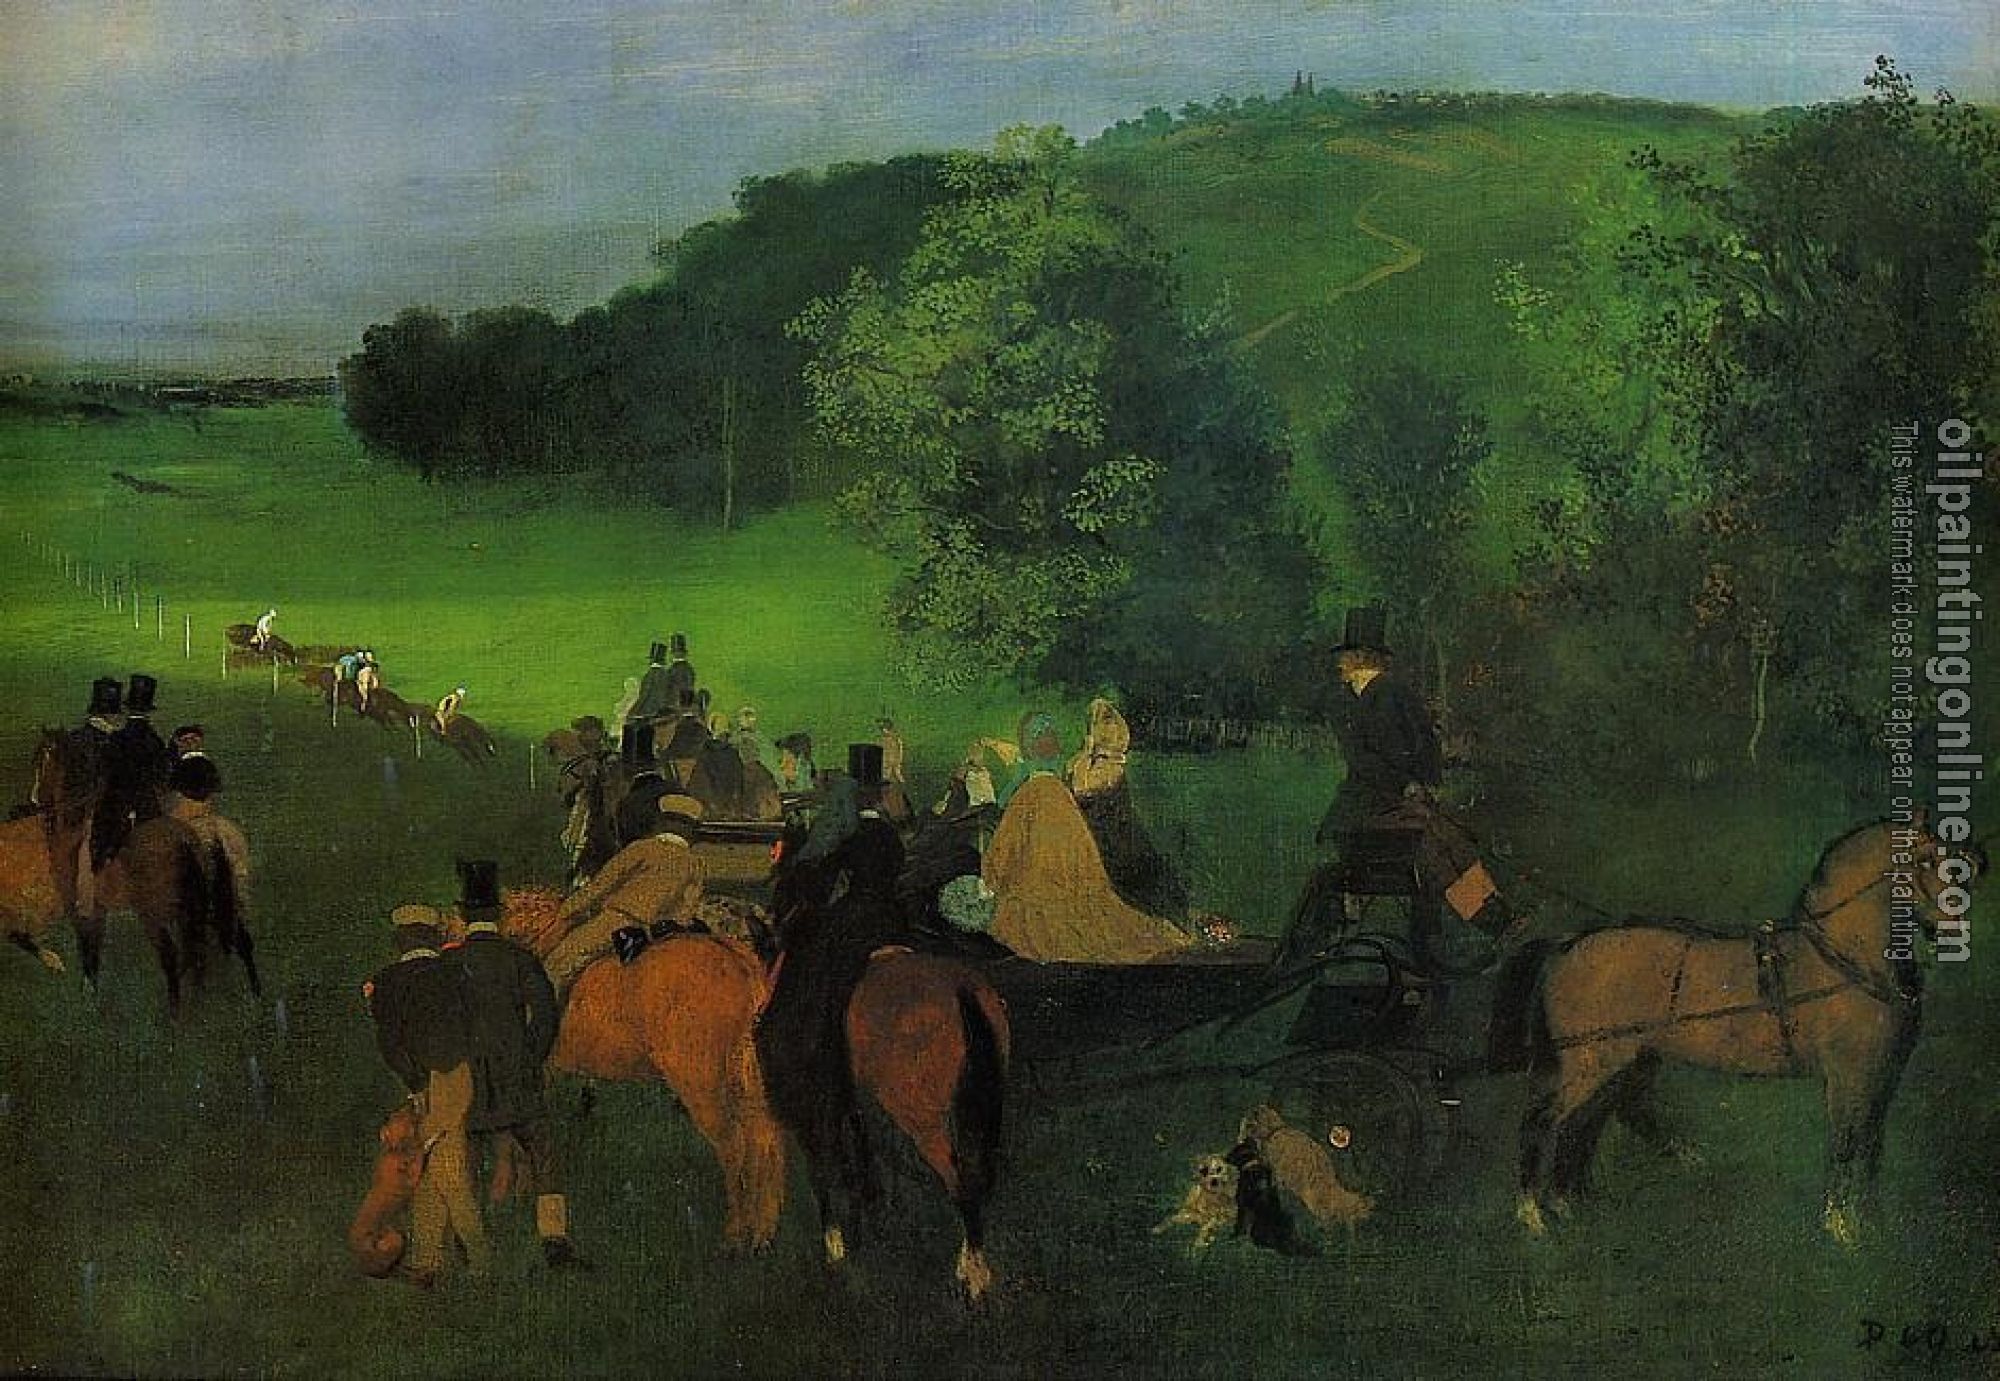 Degas, Edgar - On the Racecourse